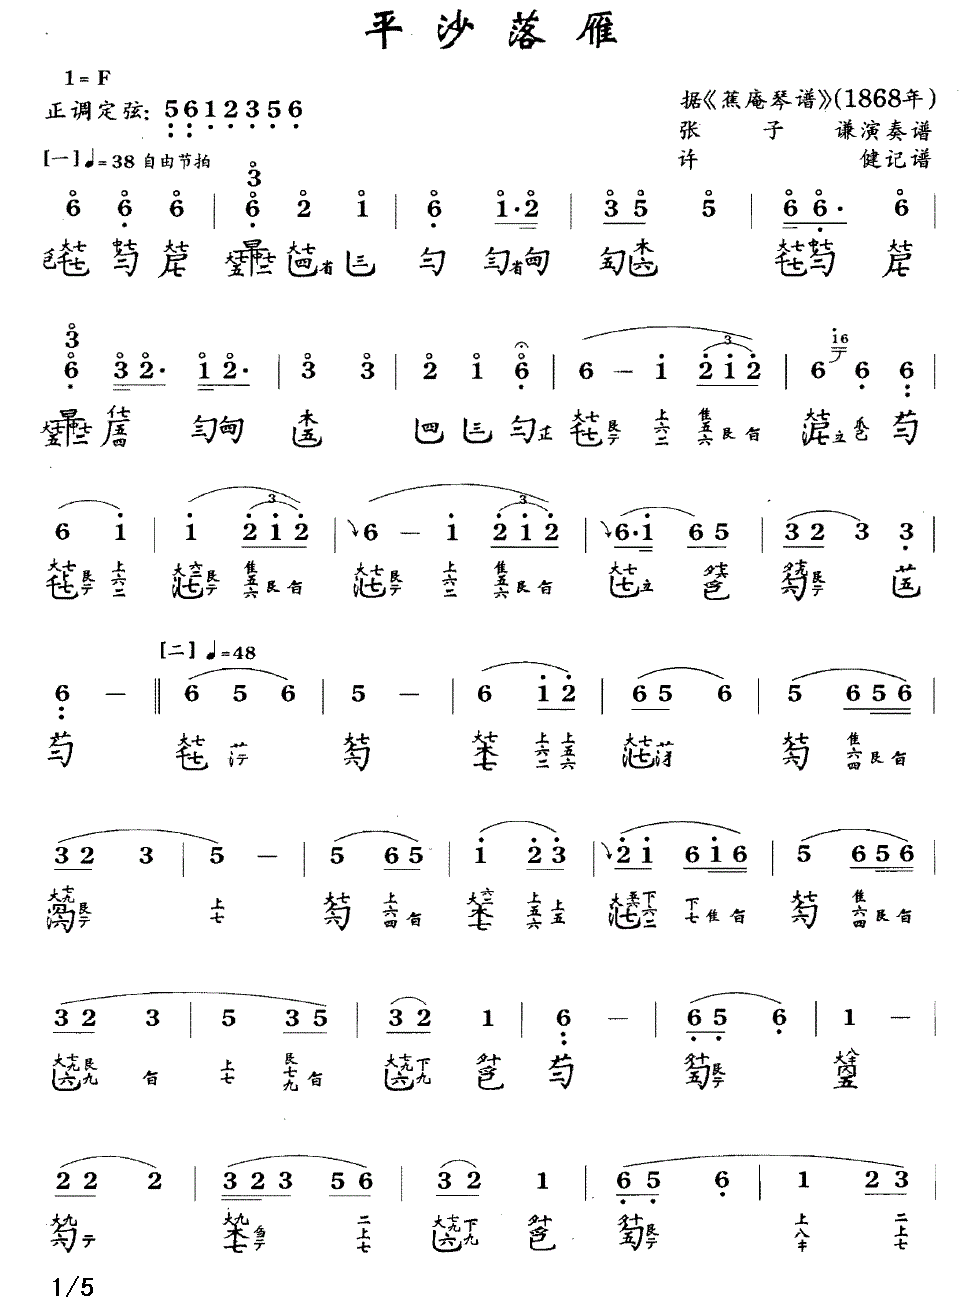 平沙落雁（古琴谱、张子谦演奏版、简谱+减字谱）(1).gif